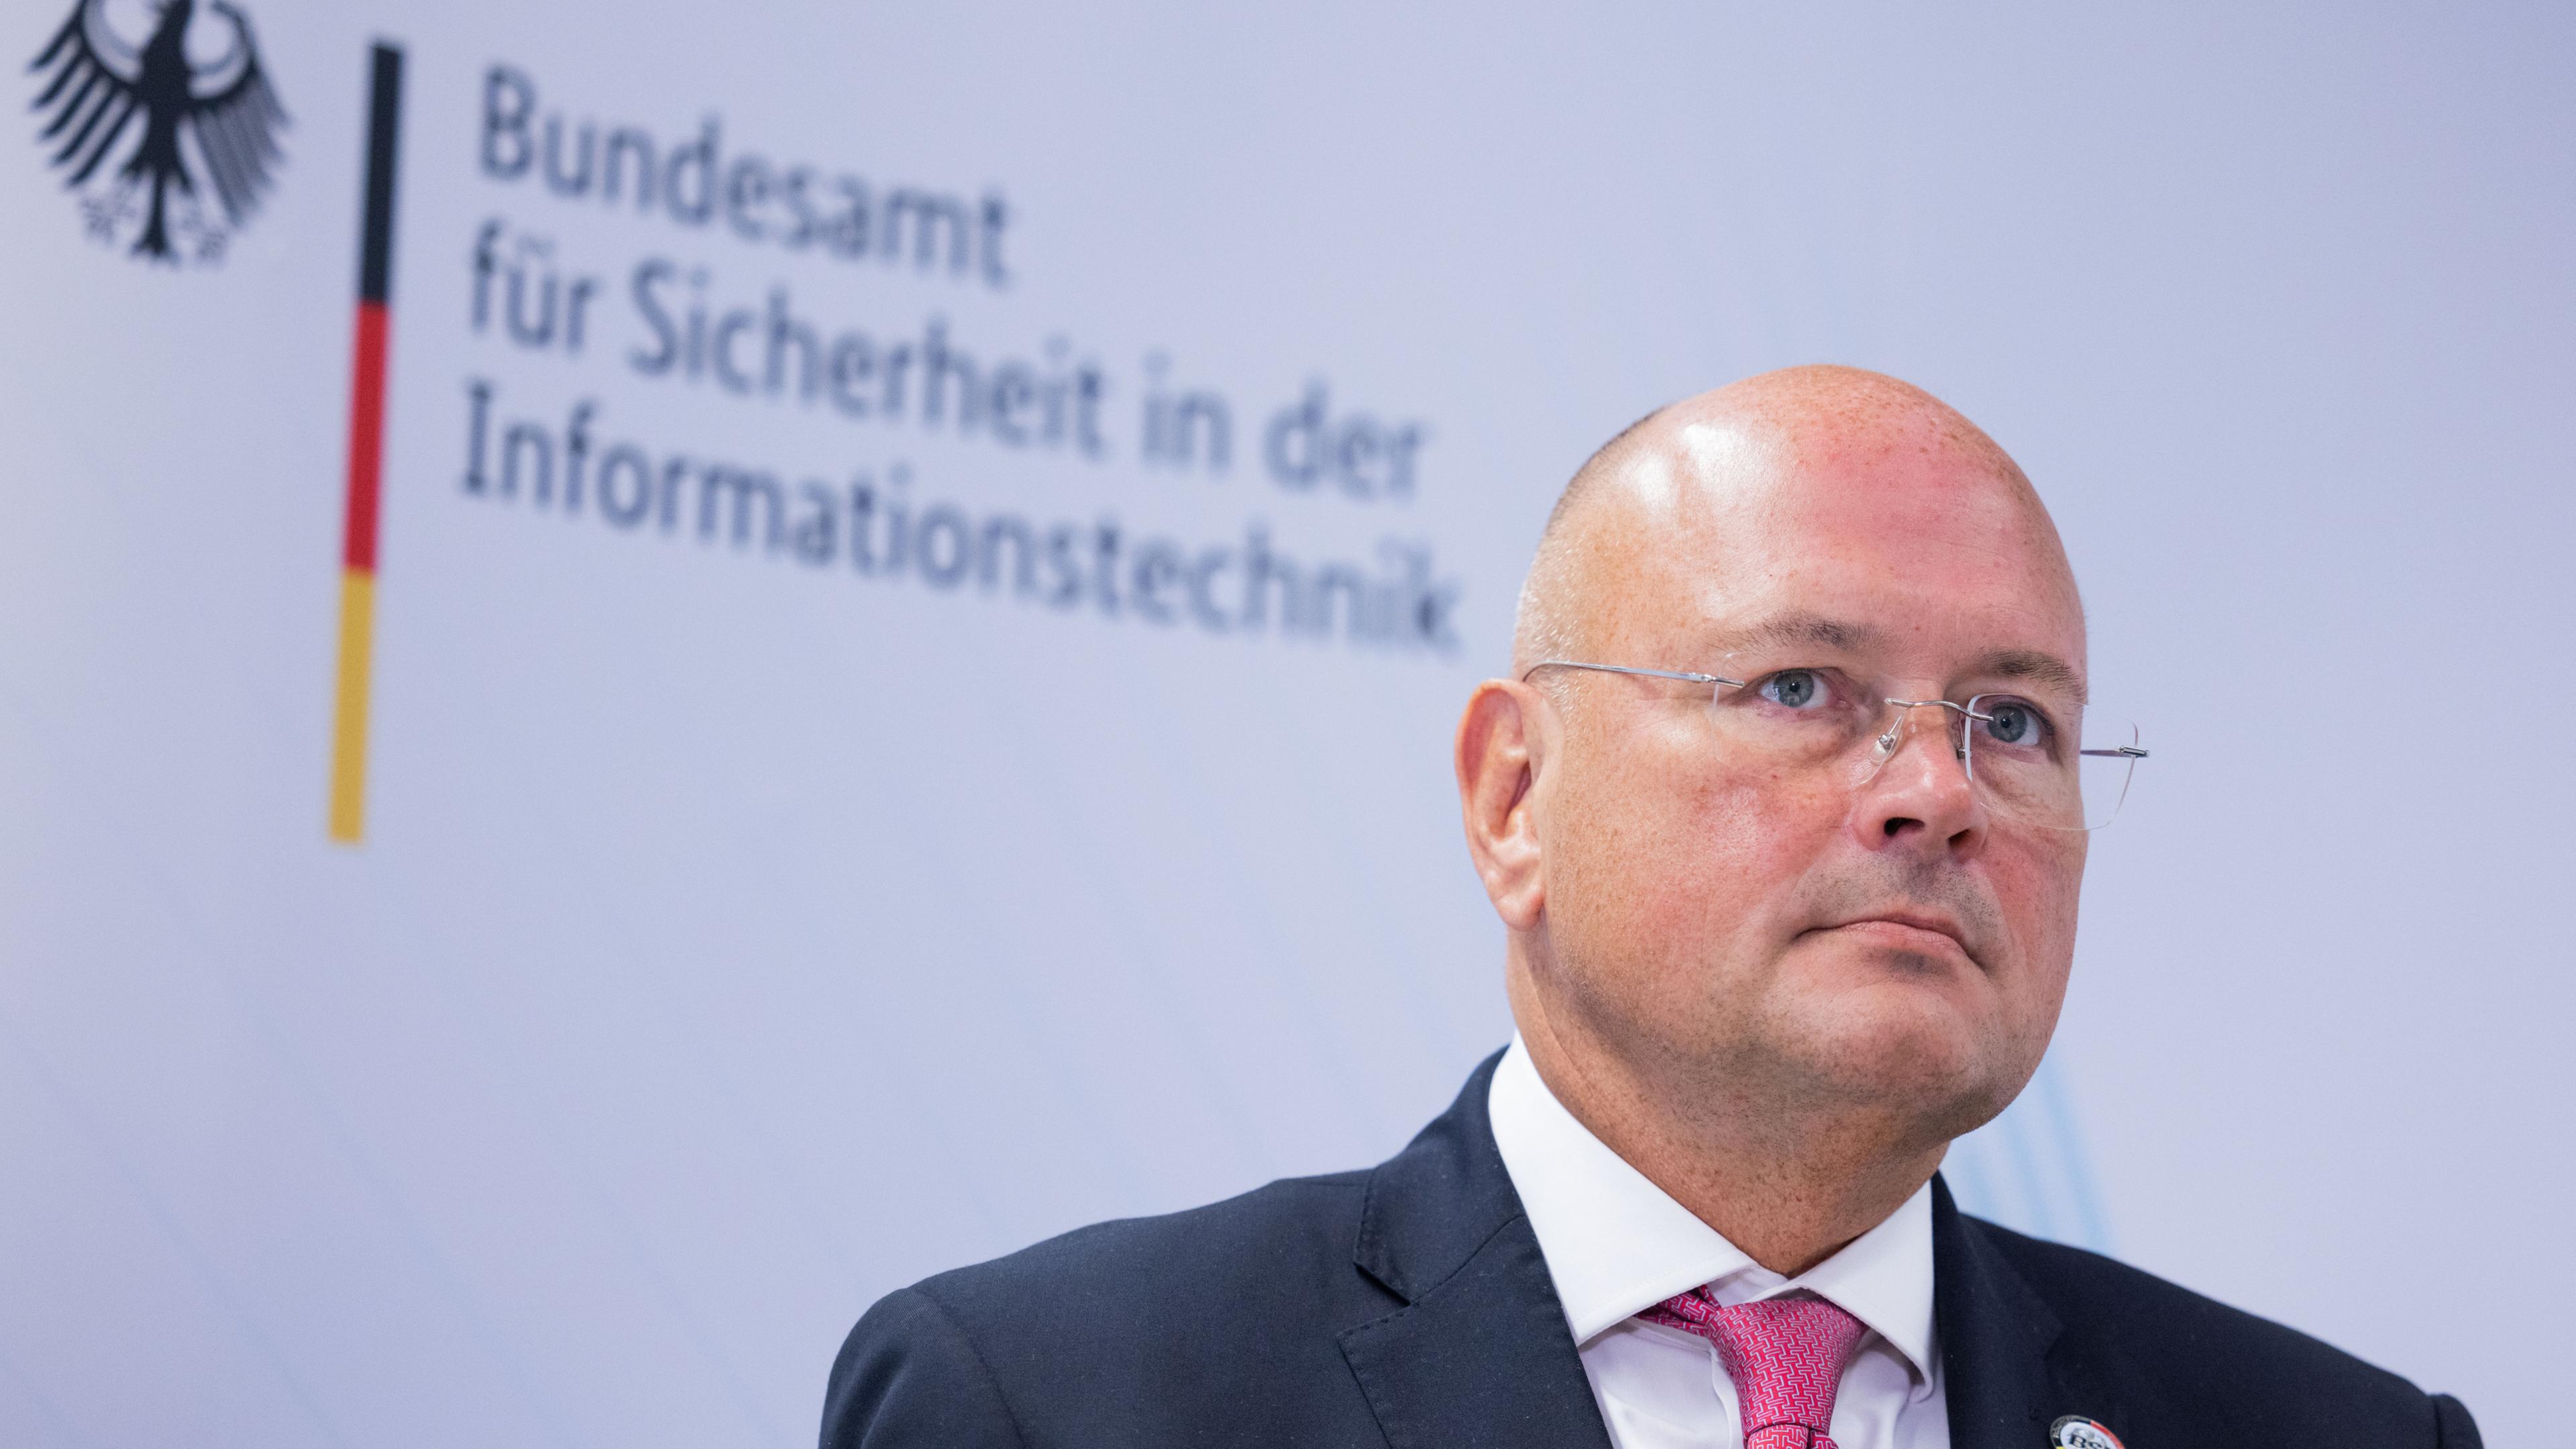 Arne Schönbohm, Präsident des Bundesamtes für Sicherheit in der Informationstechnik (BSI)